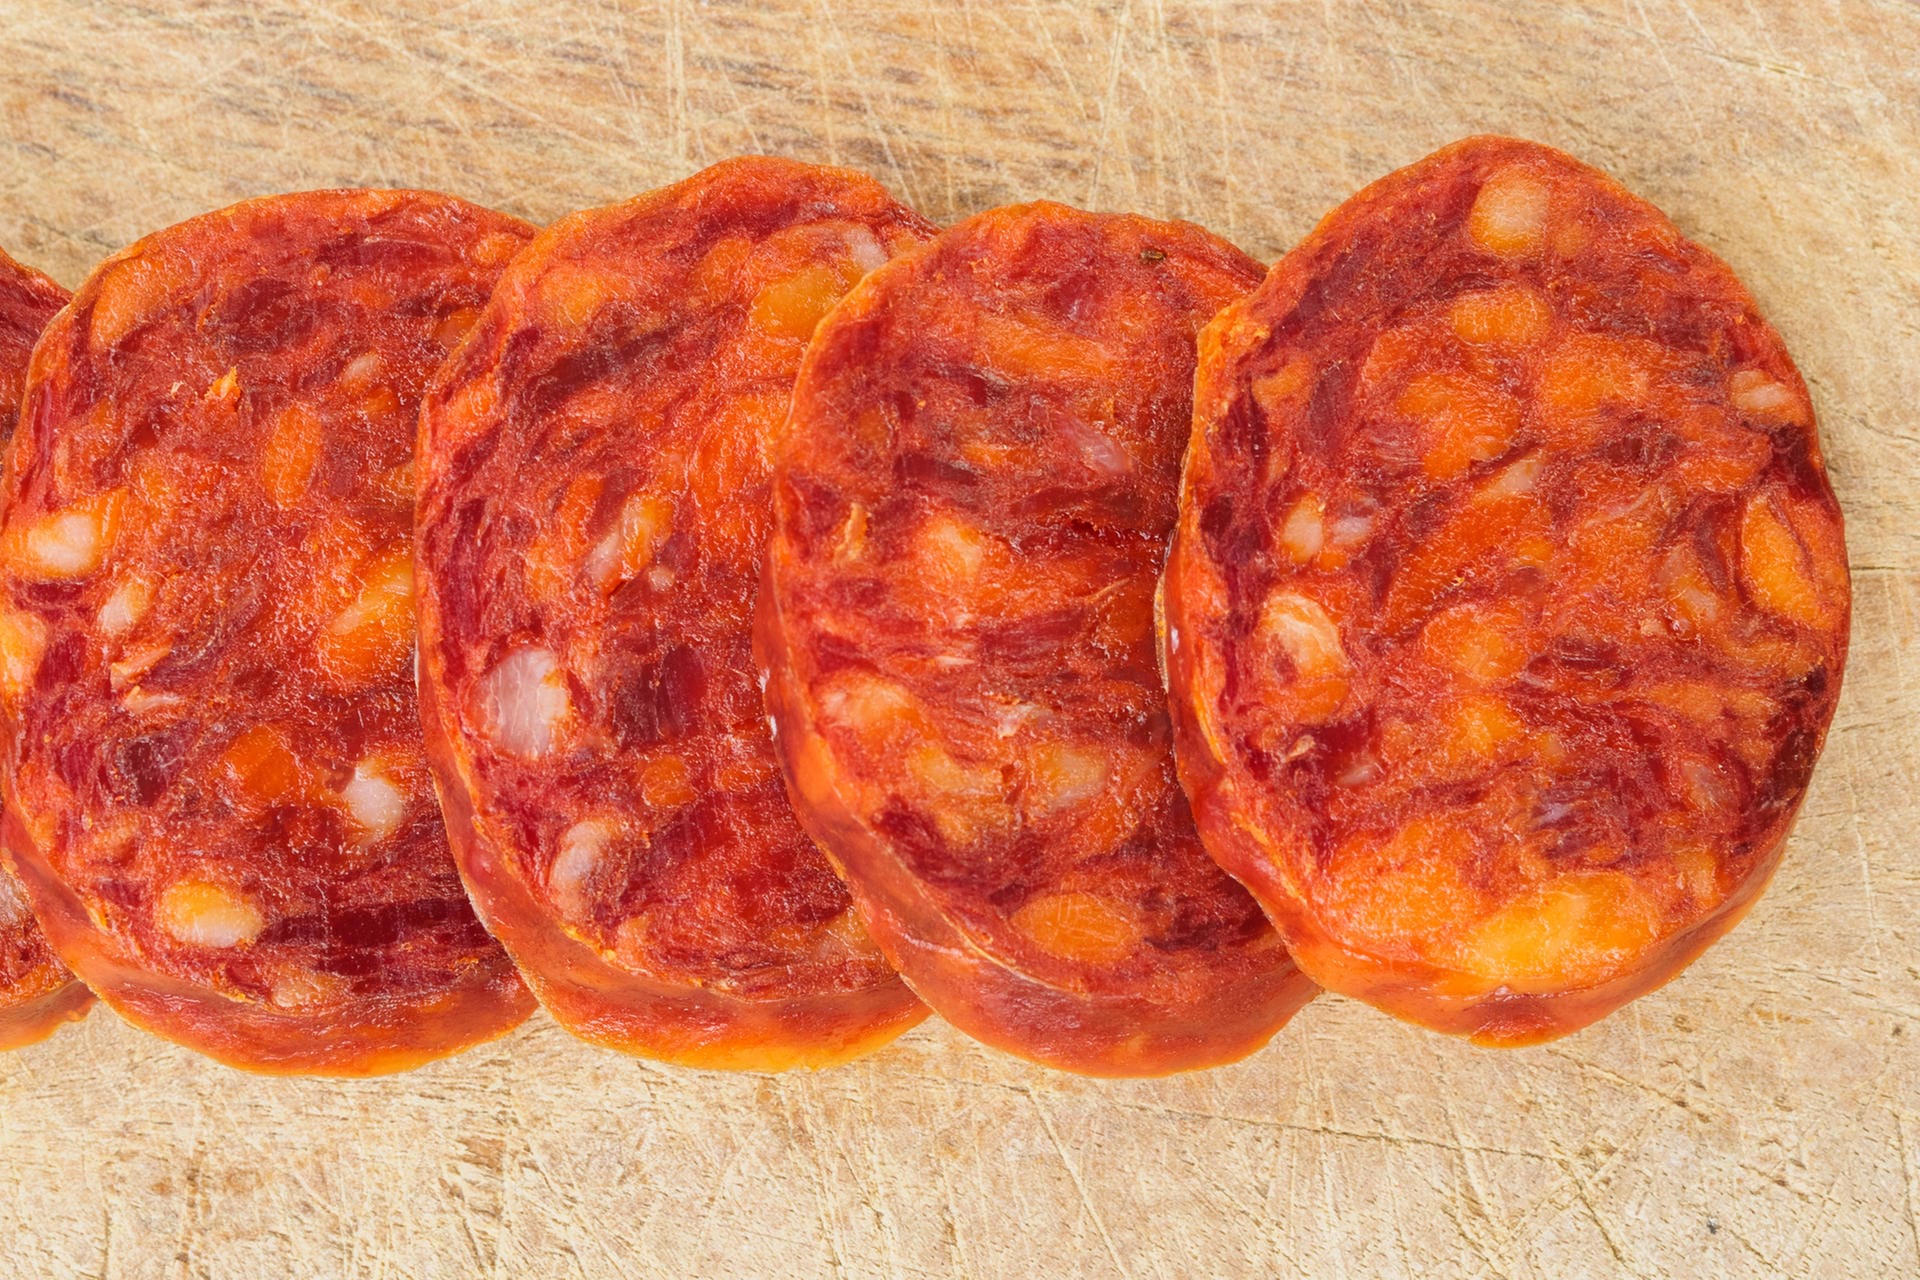 Chorizo ist die wohl populärste Wurst Spaniens. Die Salami-ähnliche, luftgetrocknete, rote Wurst wird frisch, luftgetrocknet, geräuchert, gebraten, gegrillt, gekocht und sogar eingelegt gegessen. Die grobe Chorizo wird mit Knoblauch und geräuchertem Paprikapulver gewürzt. In der spanischen Küche wird sie in vielen verschiedenen Gerichten verwendet.